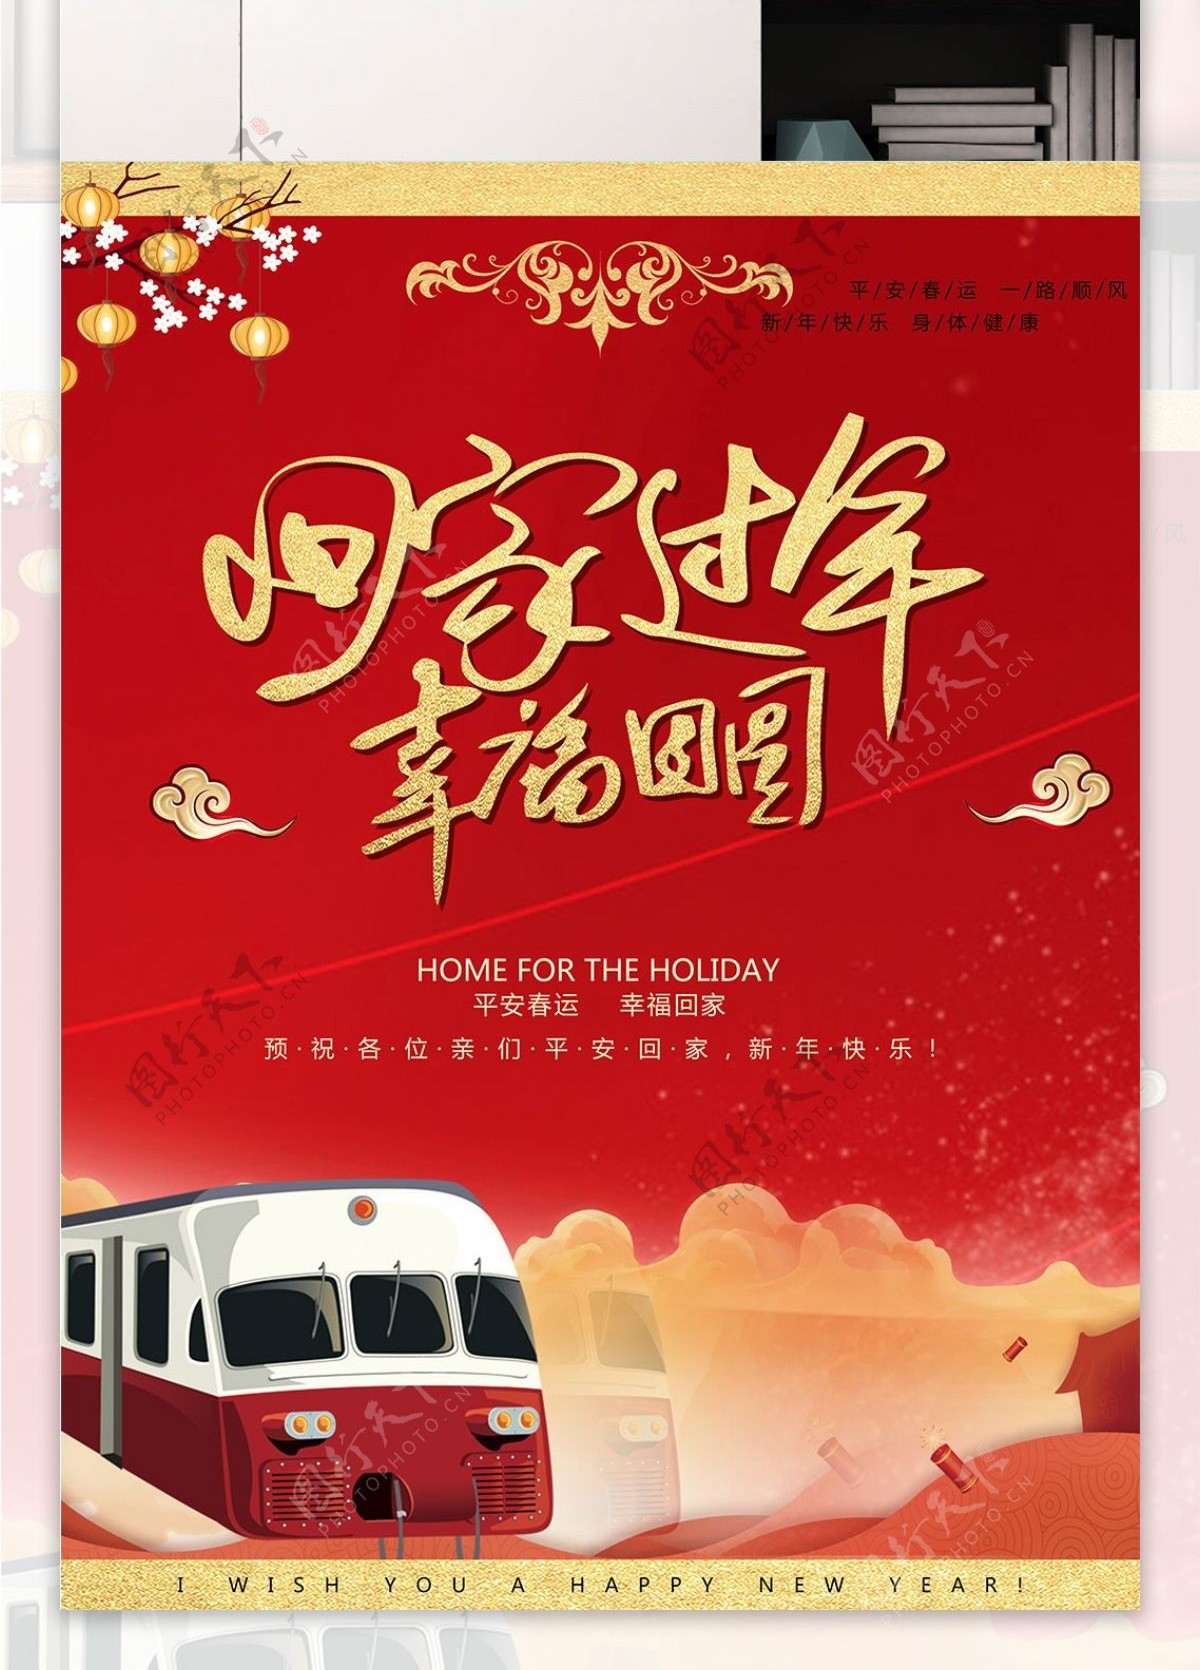 春节春运回家过年幸福团圆宣传海报